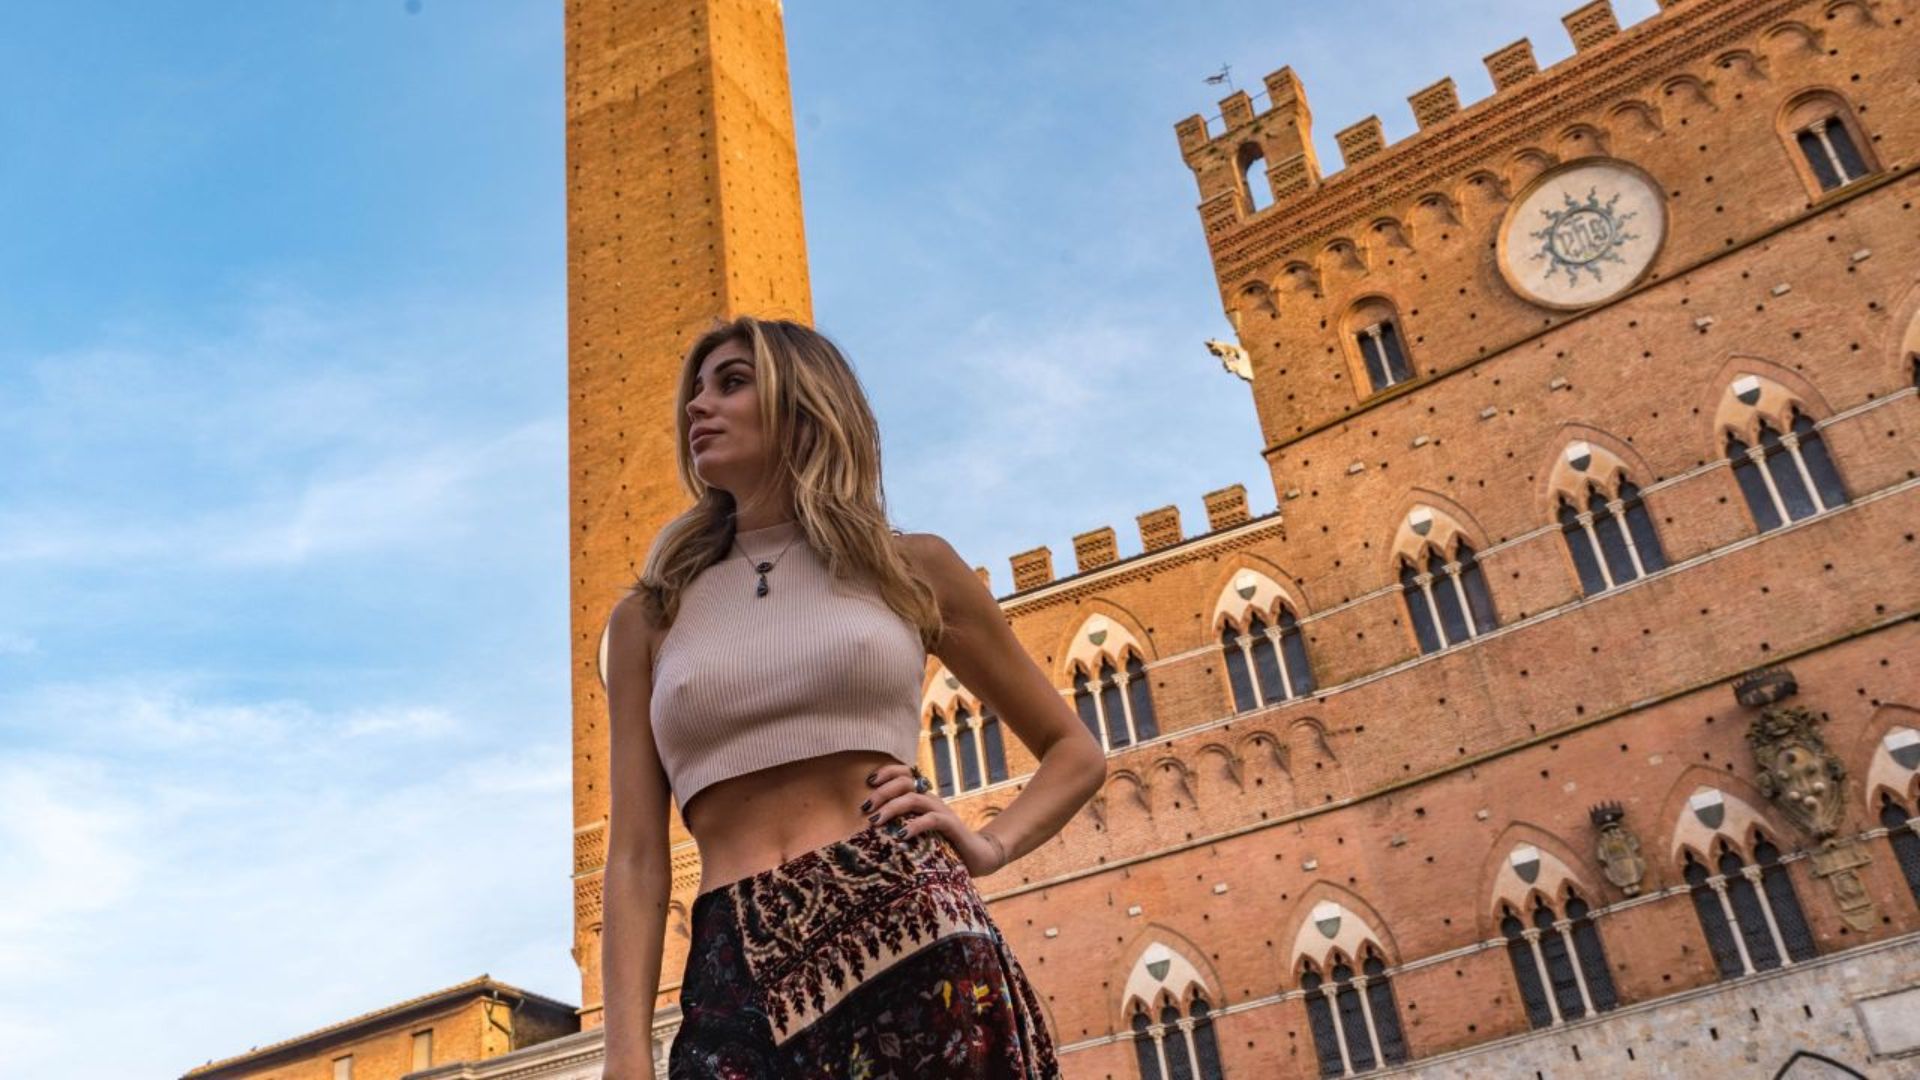 Tour privado para descubrir los lugares más emblemáticos del centro histórico de Siena con fotógrafo personal